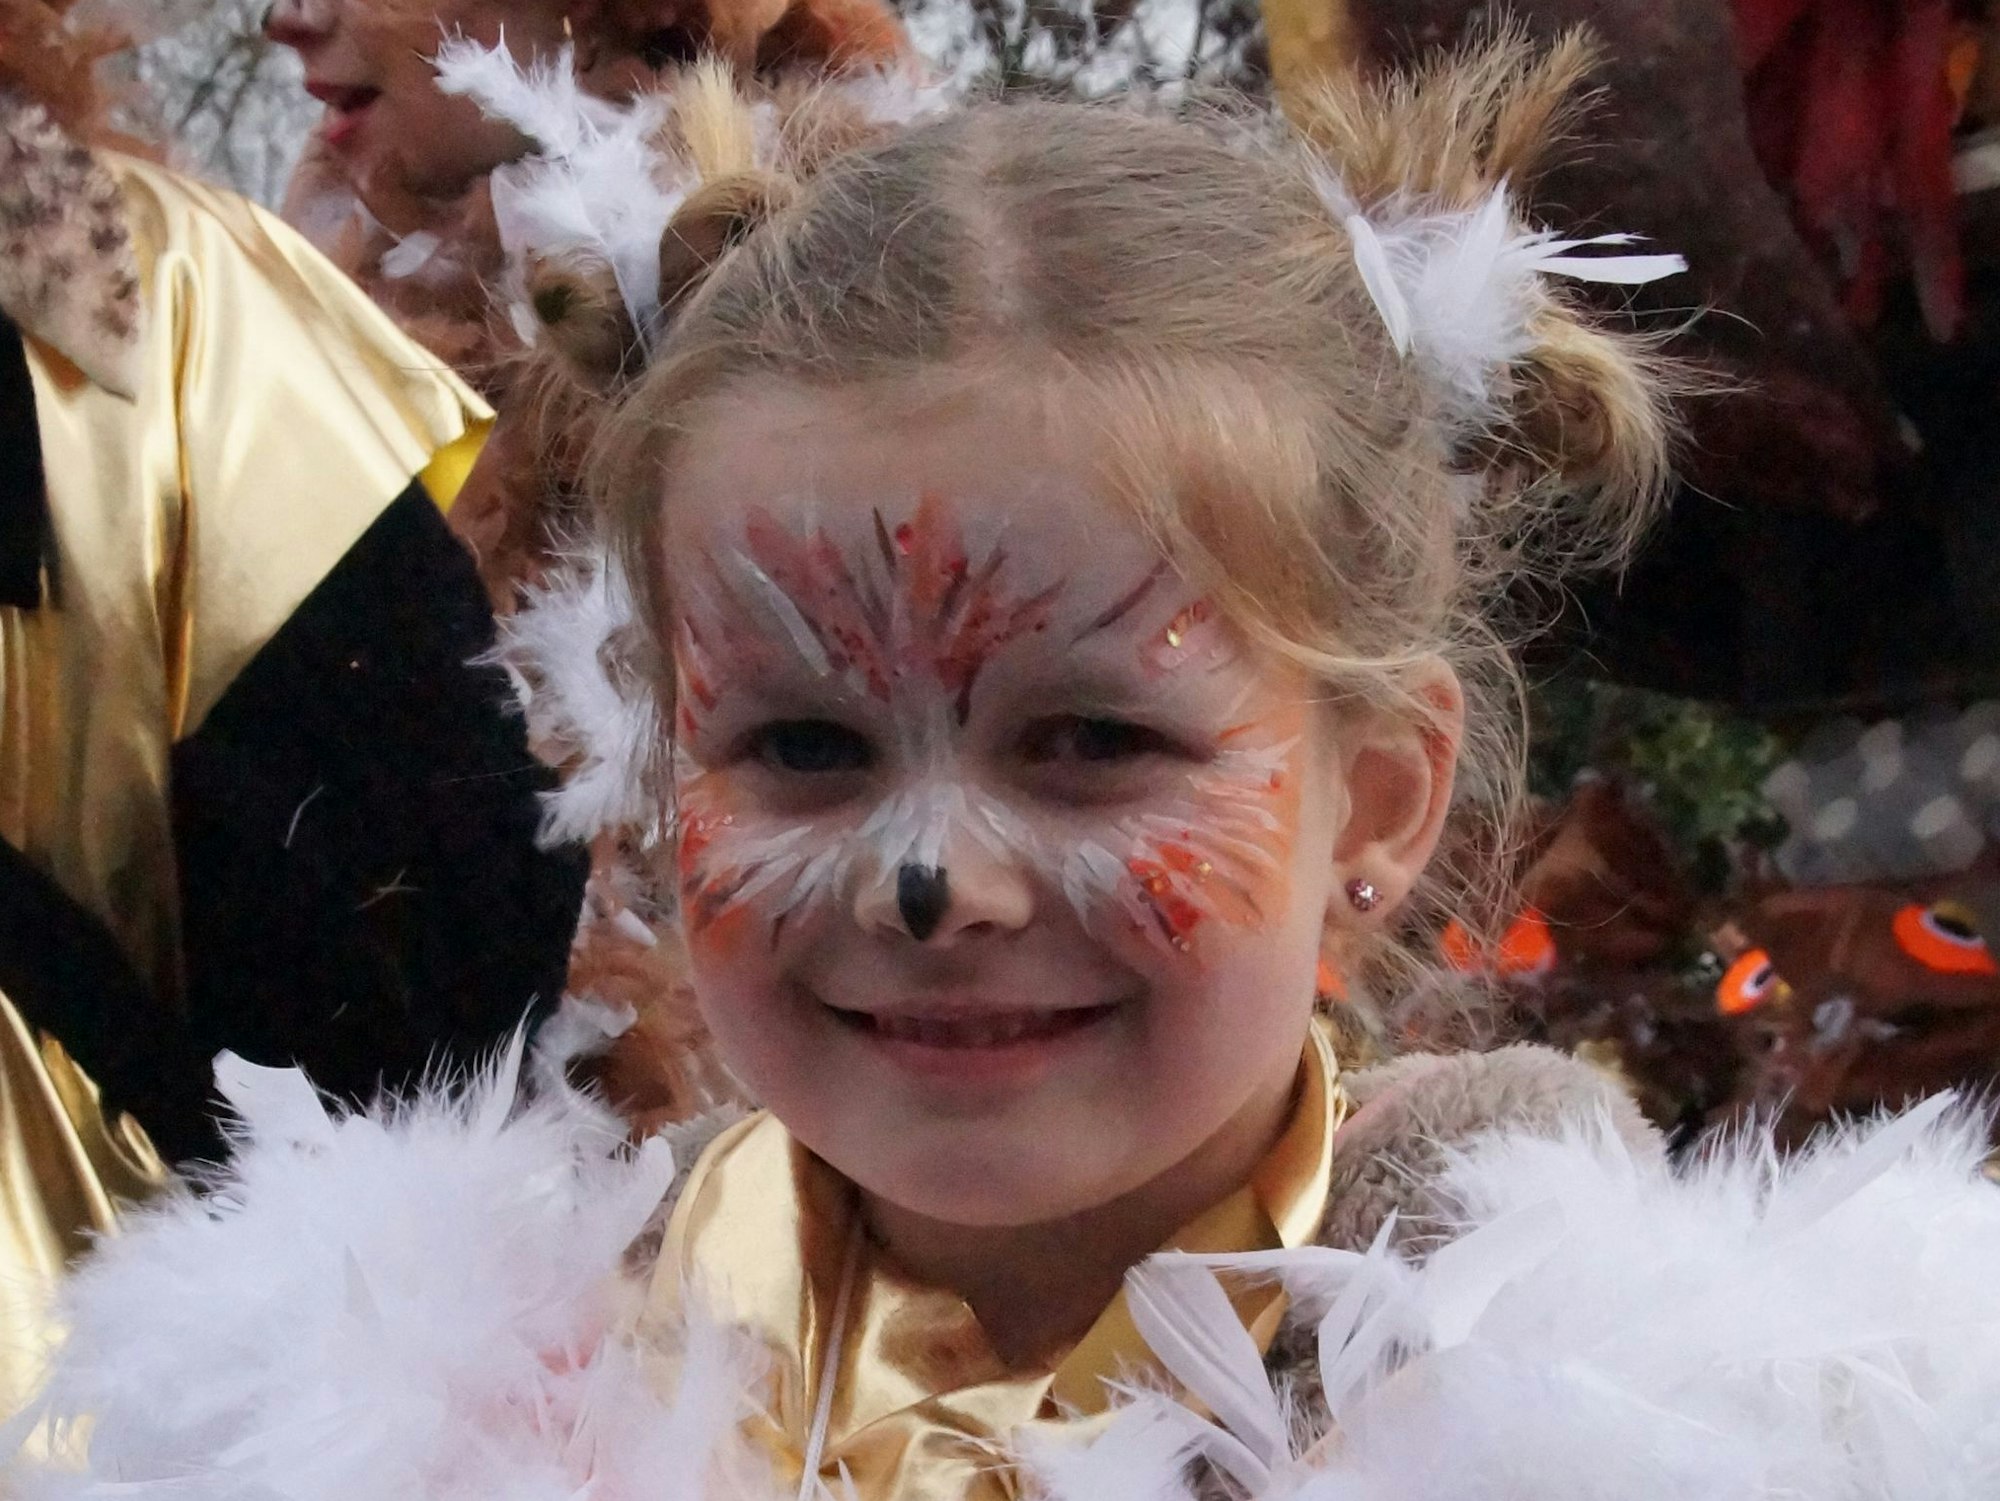 Porträt eines blonden Mädchens mit Eulen-Schminke im Gesicht und Federkragen um die Schultern.